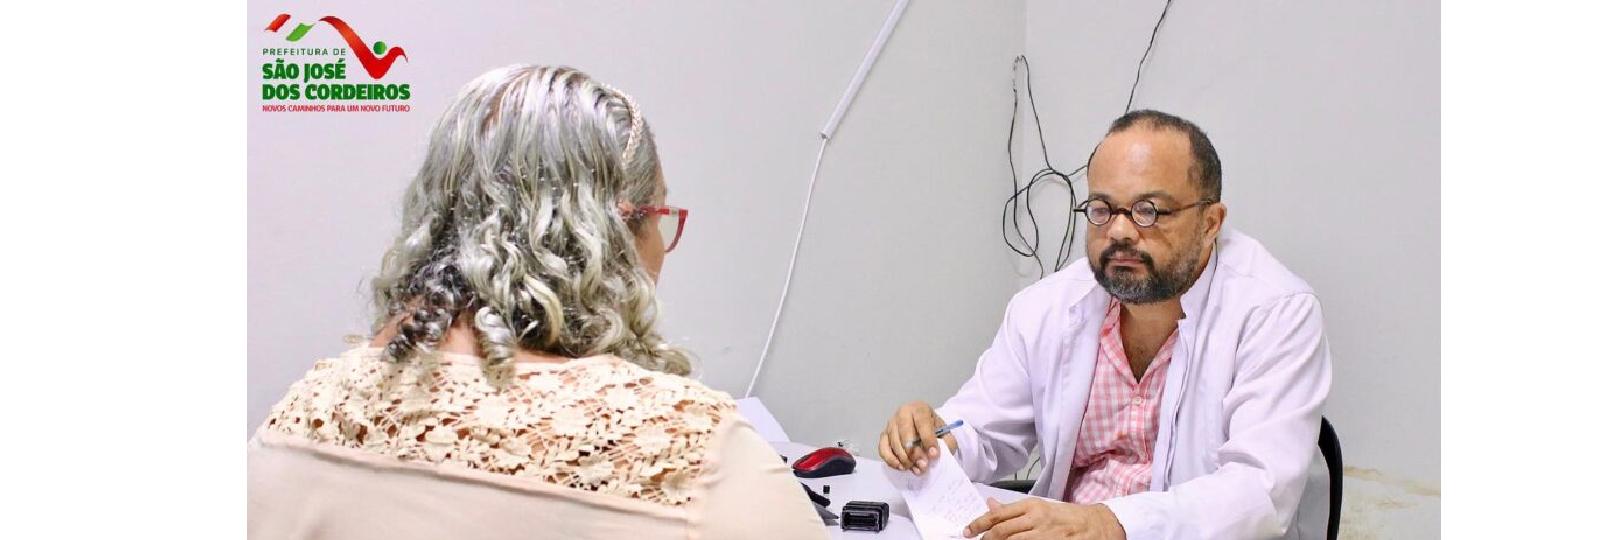 Prefeitura de São José dos Cordeiros amplia serviços de saúde ofertados a população